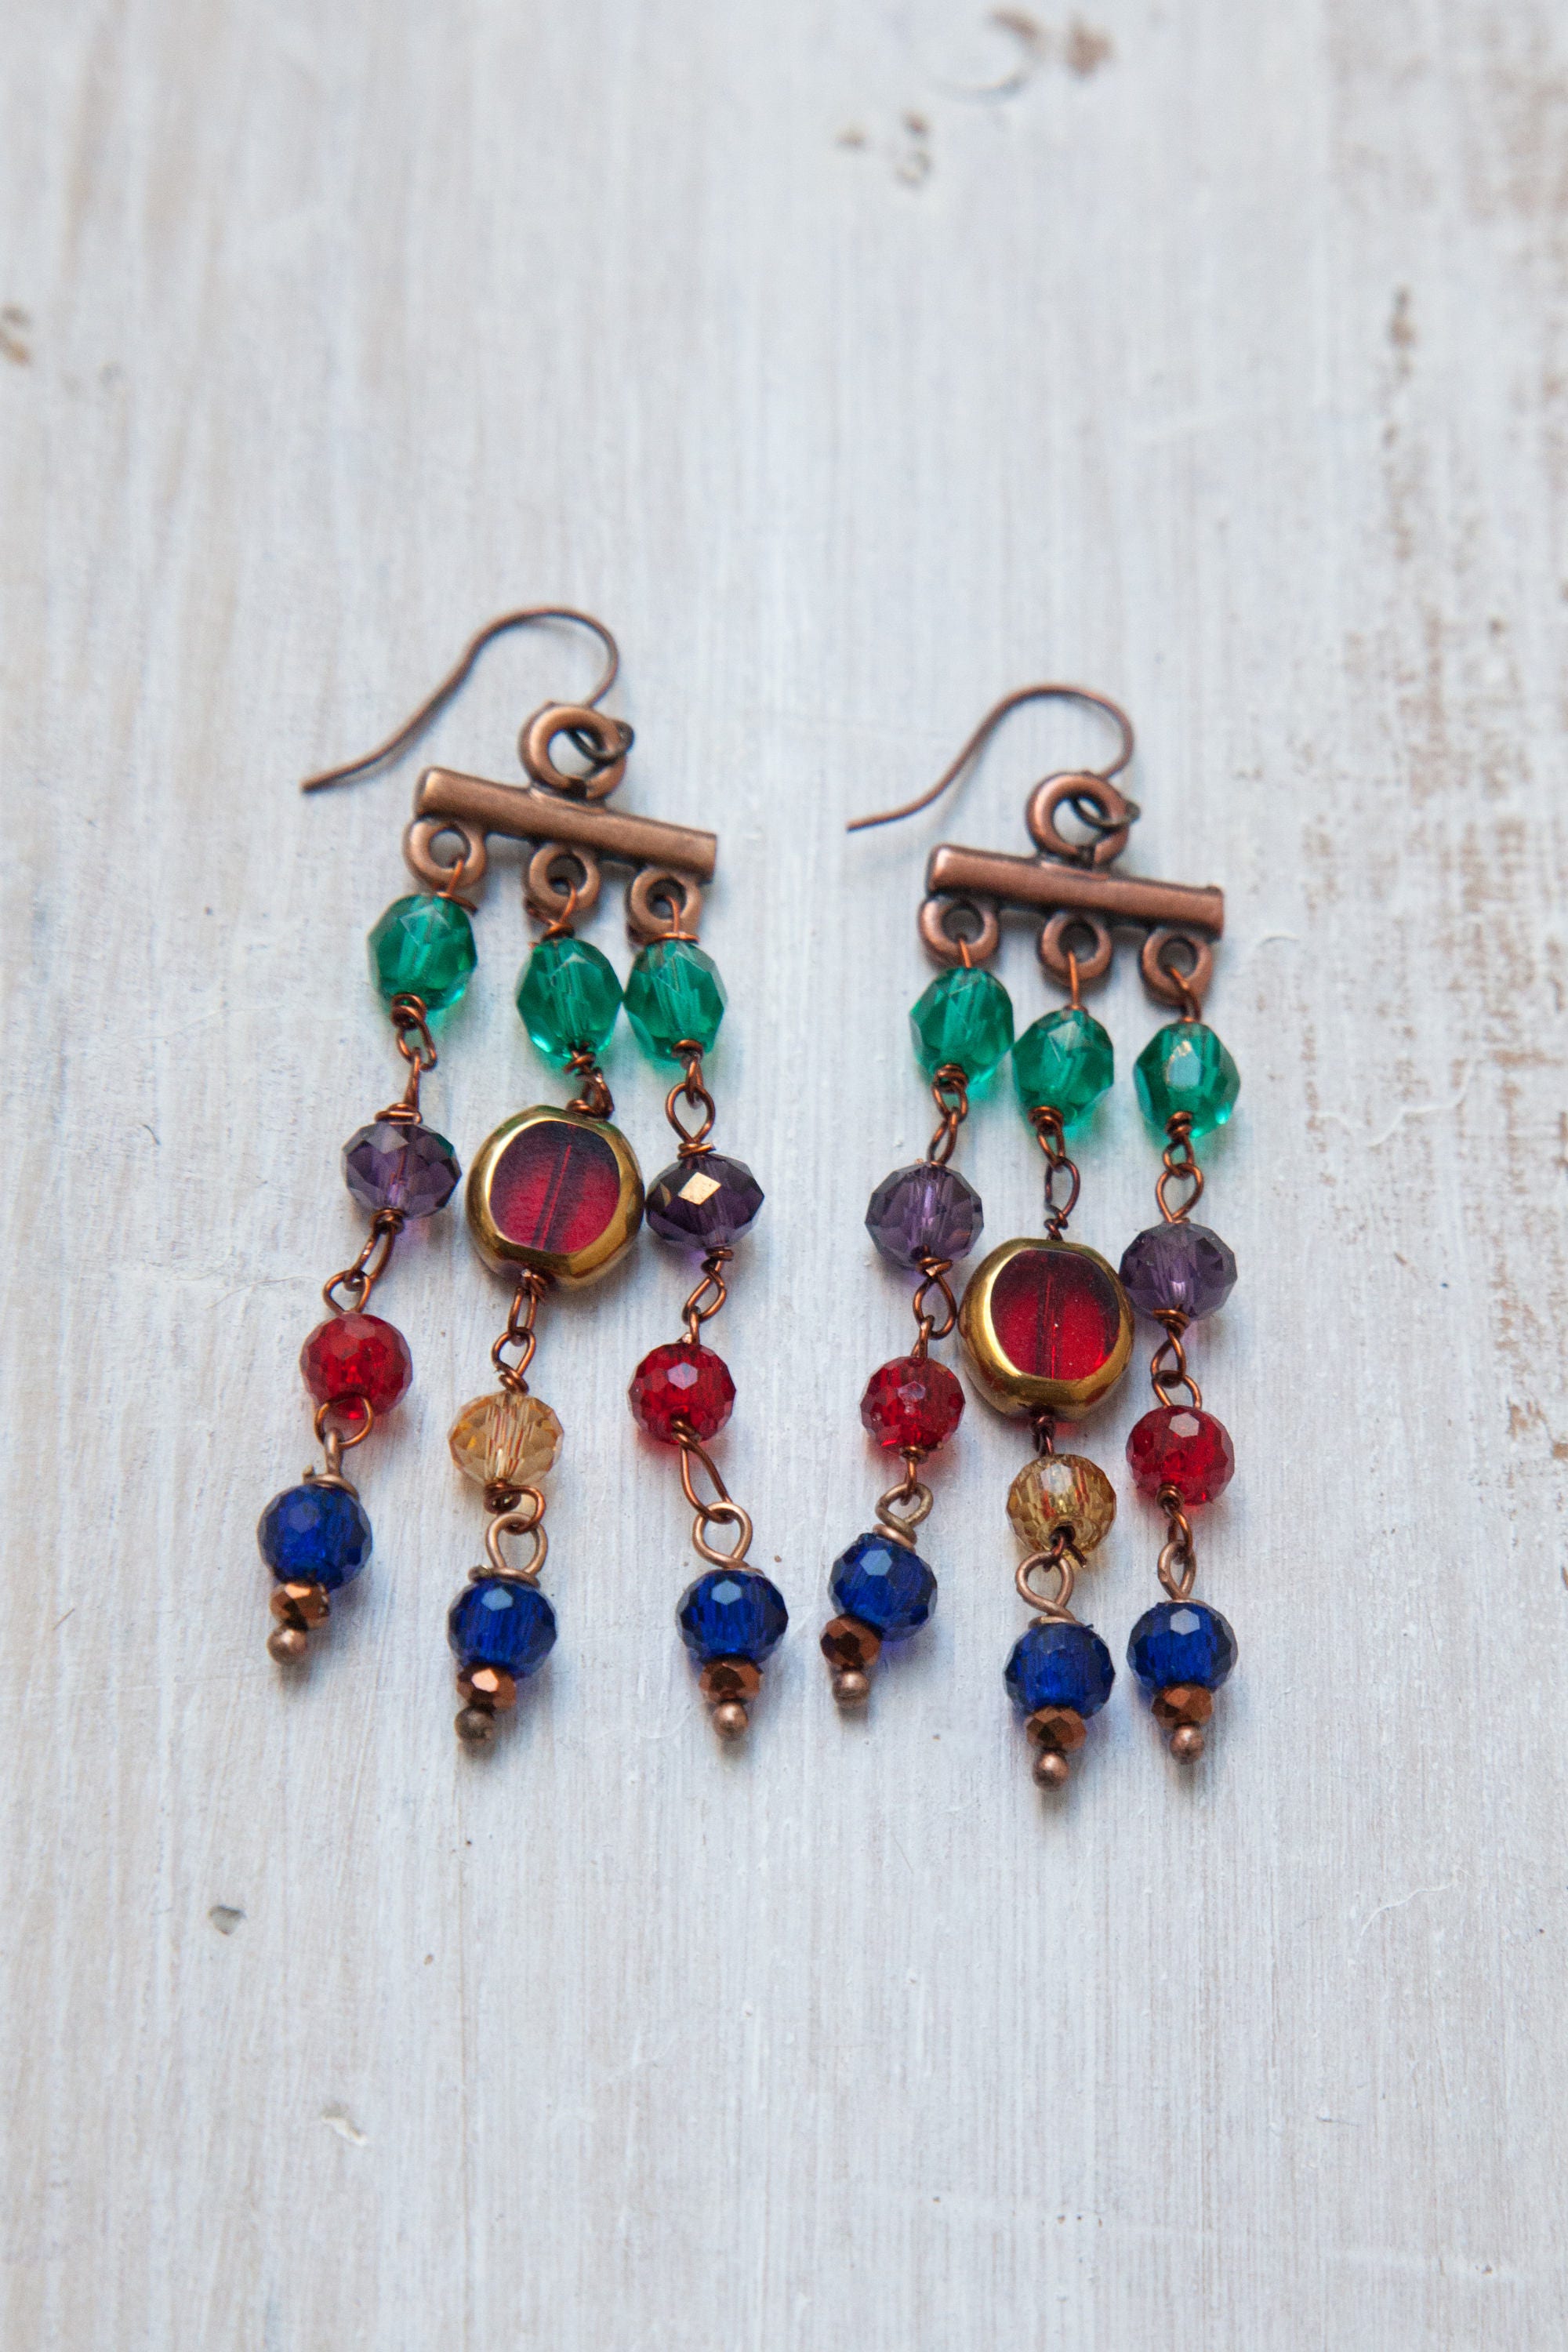 Byzantine Earrings Chandelier Earrings Byzantine Inspired - Etsy